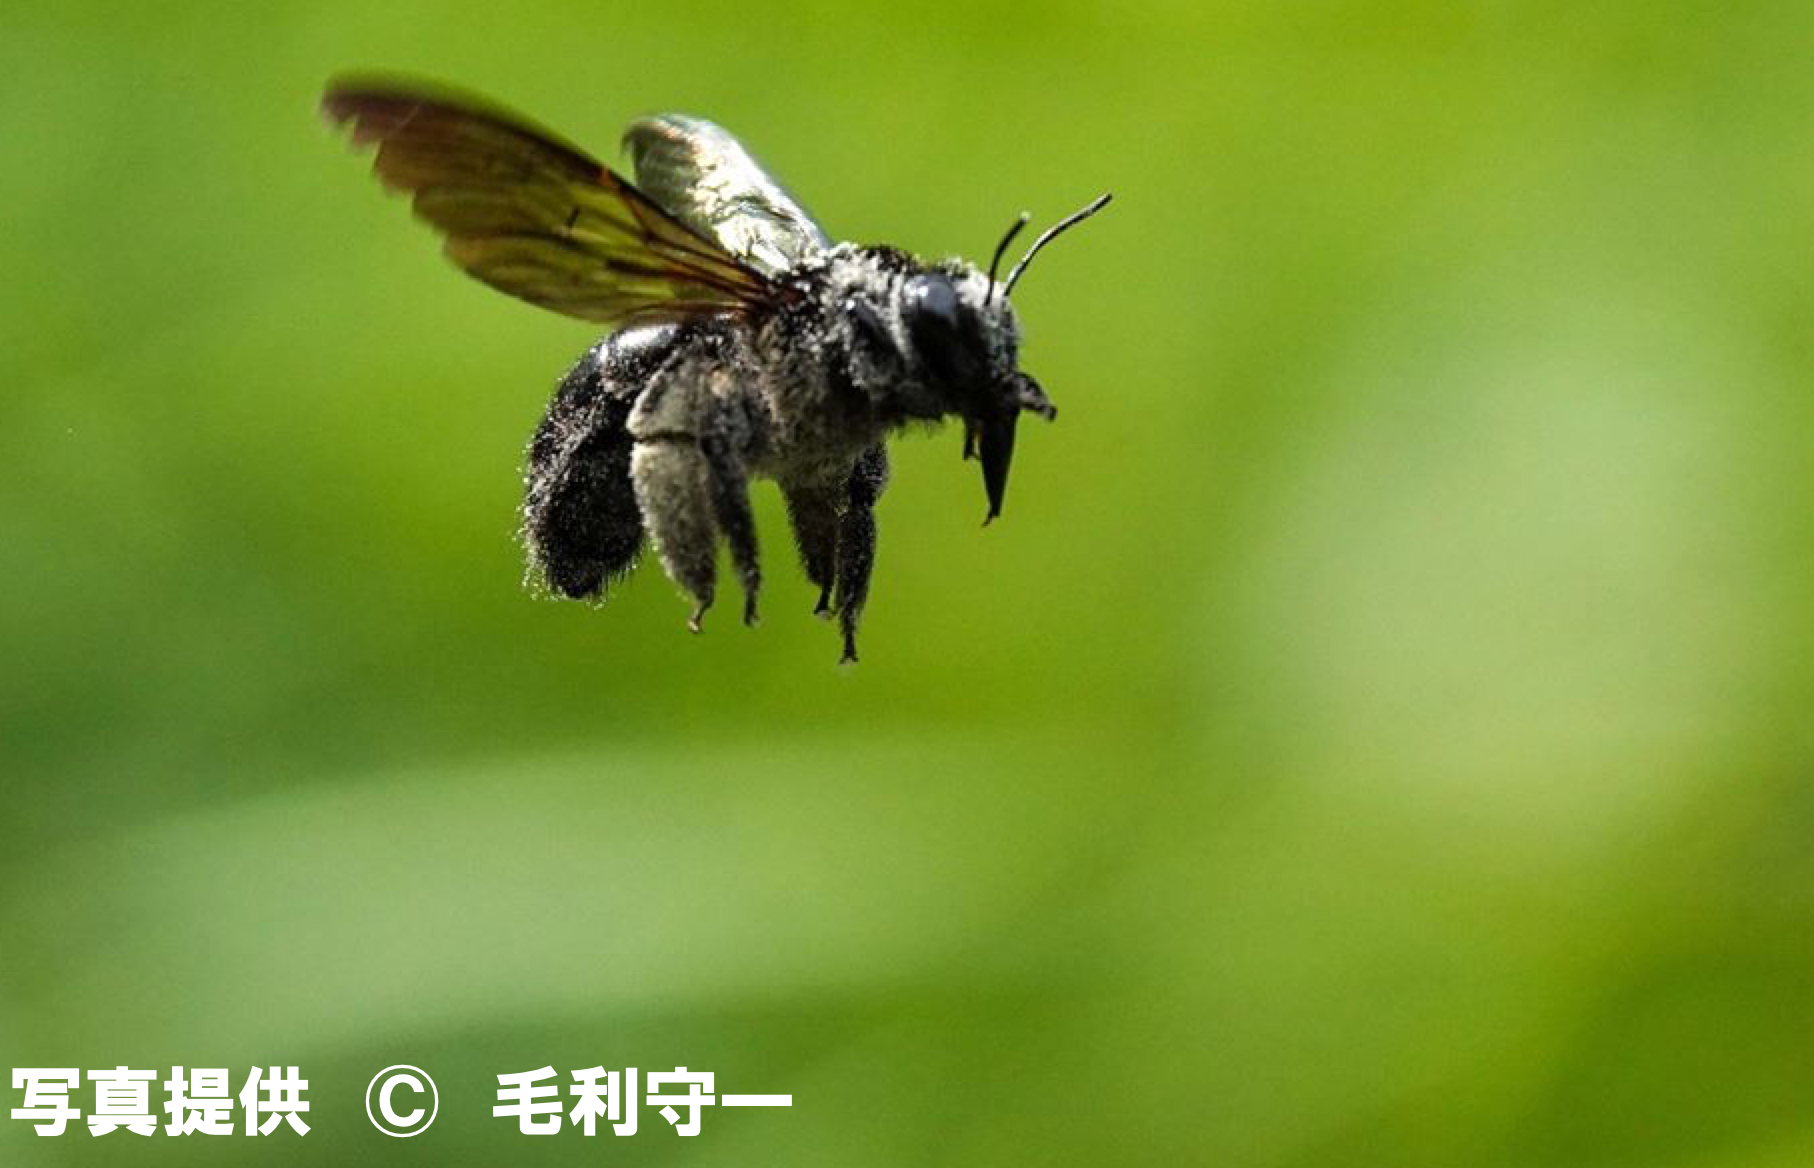 美麗昆虫標本 タイワンタケクマバチ ペア 安価 funleucemialinfoma.org